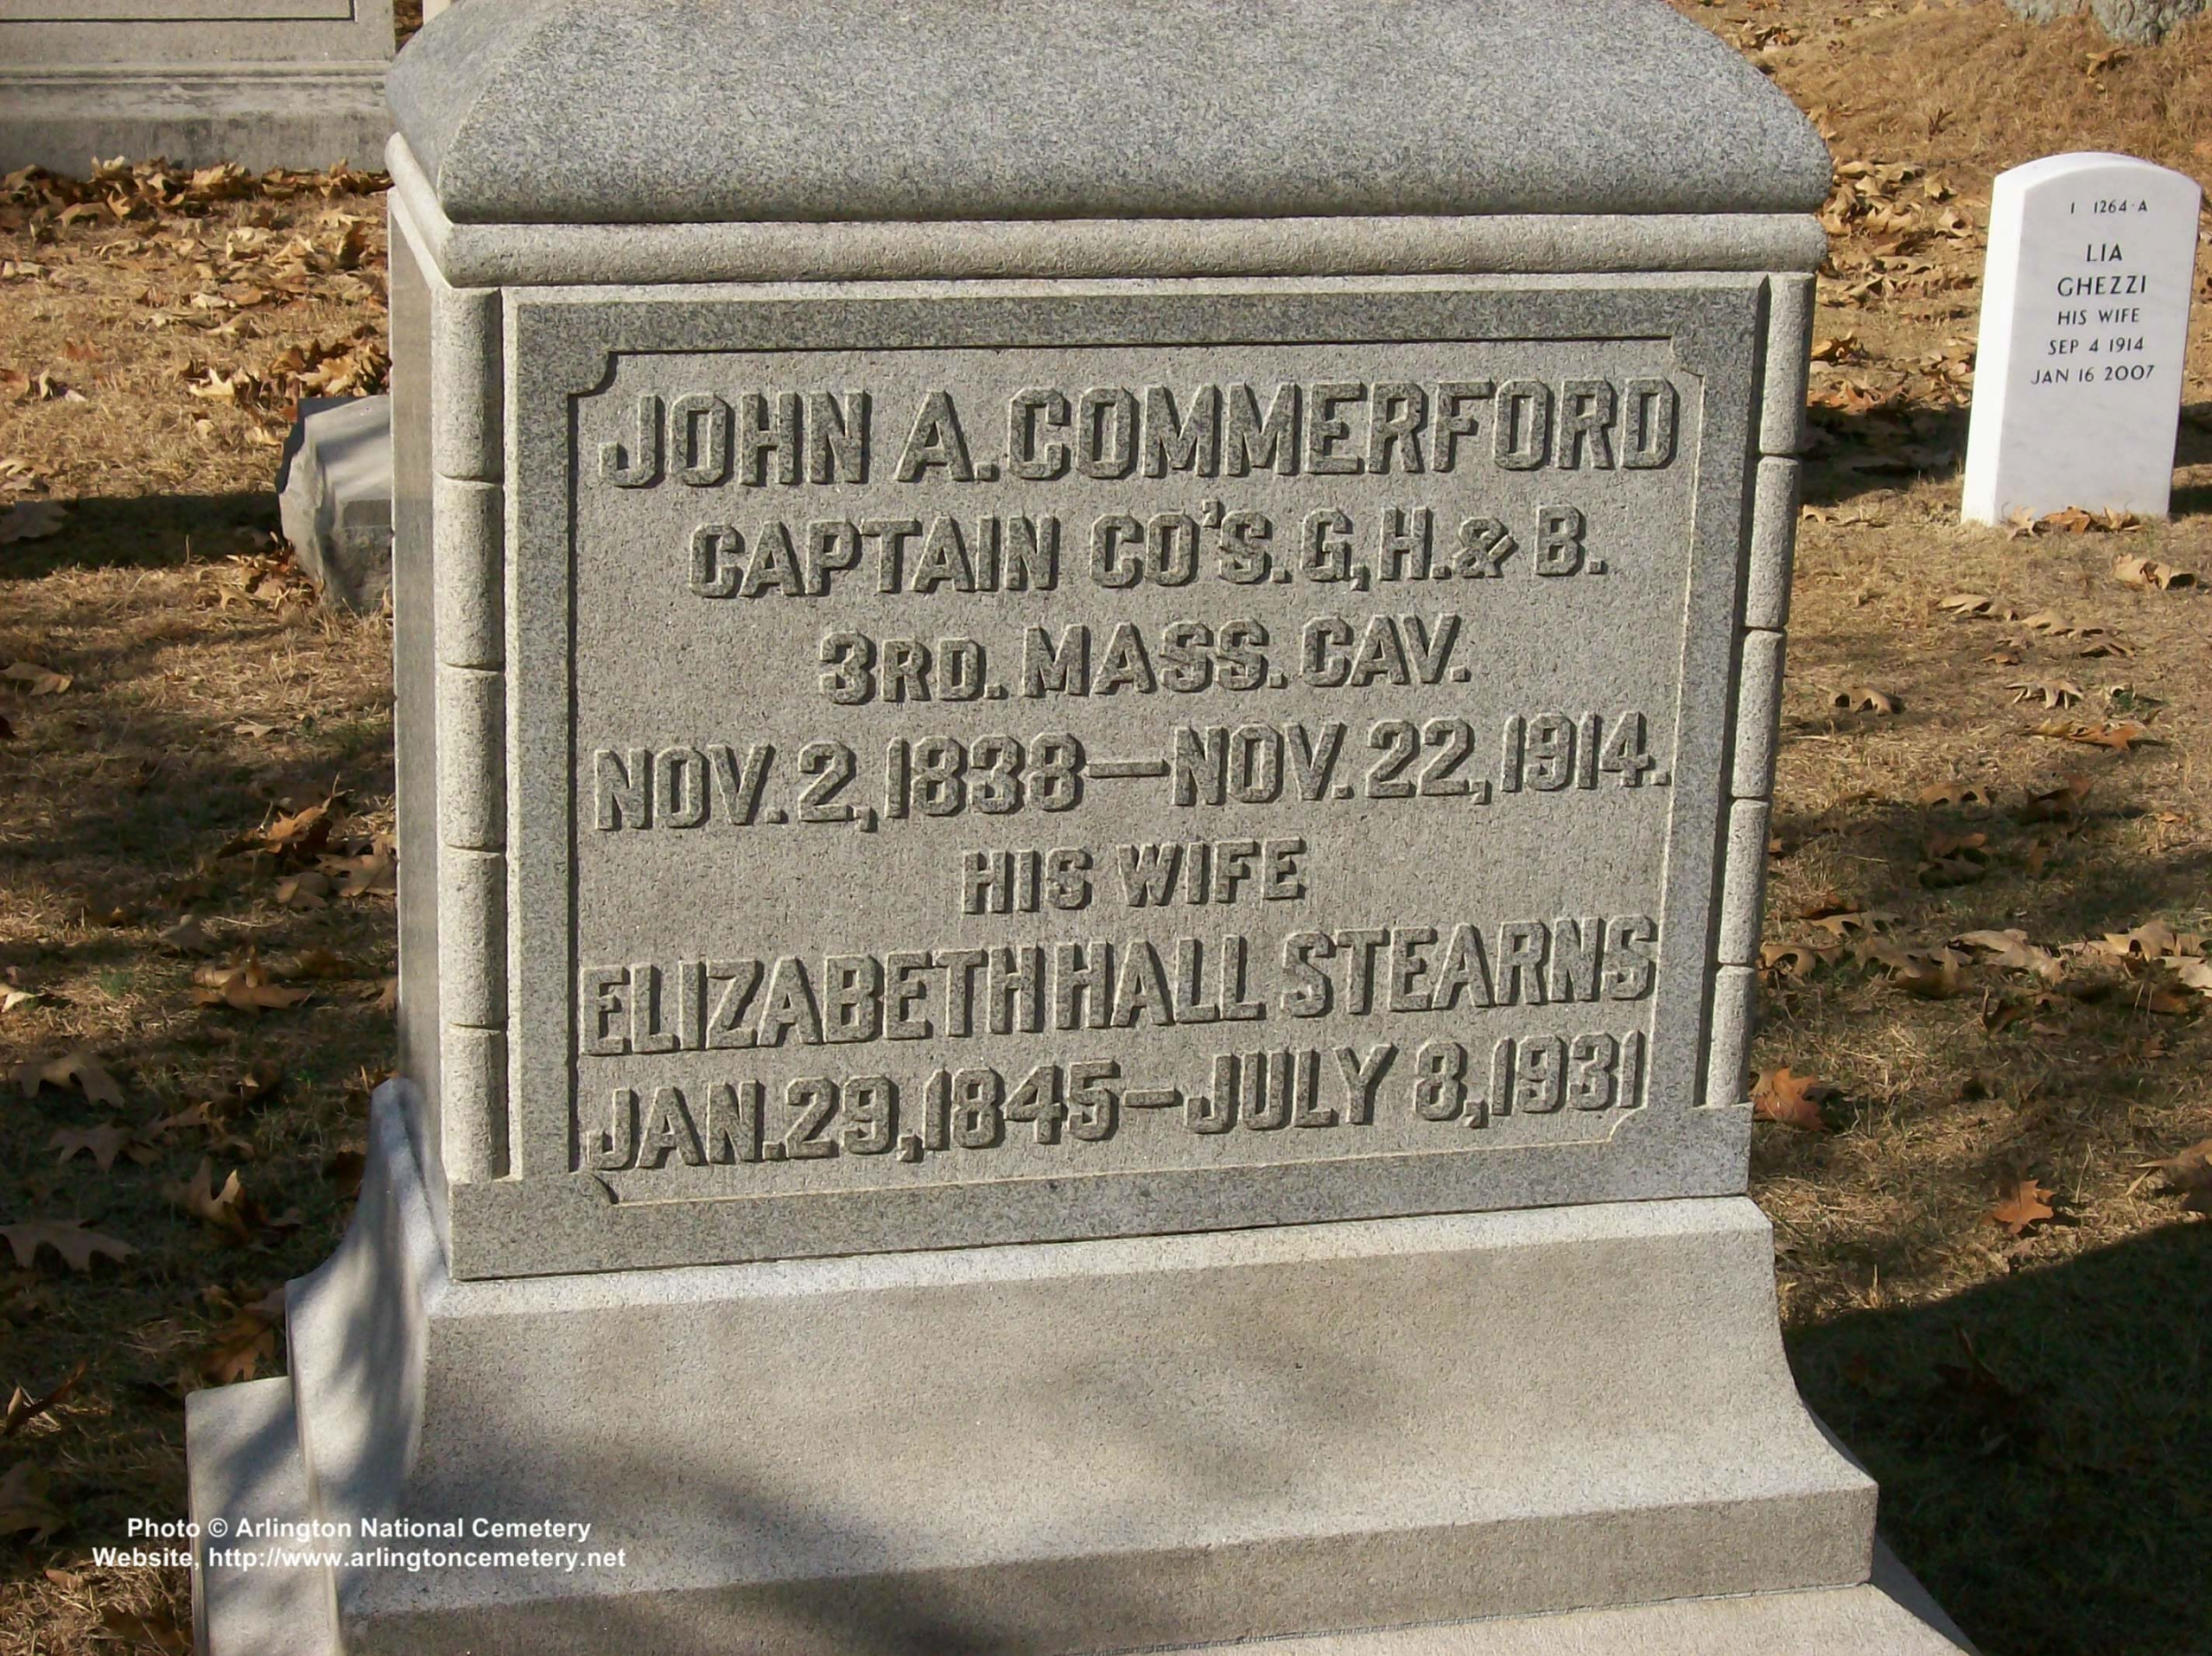 jacommerford-gravesite-photo-october-2007-001